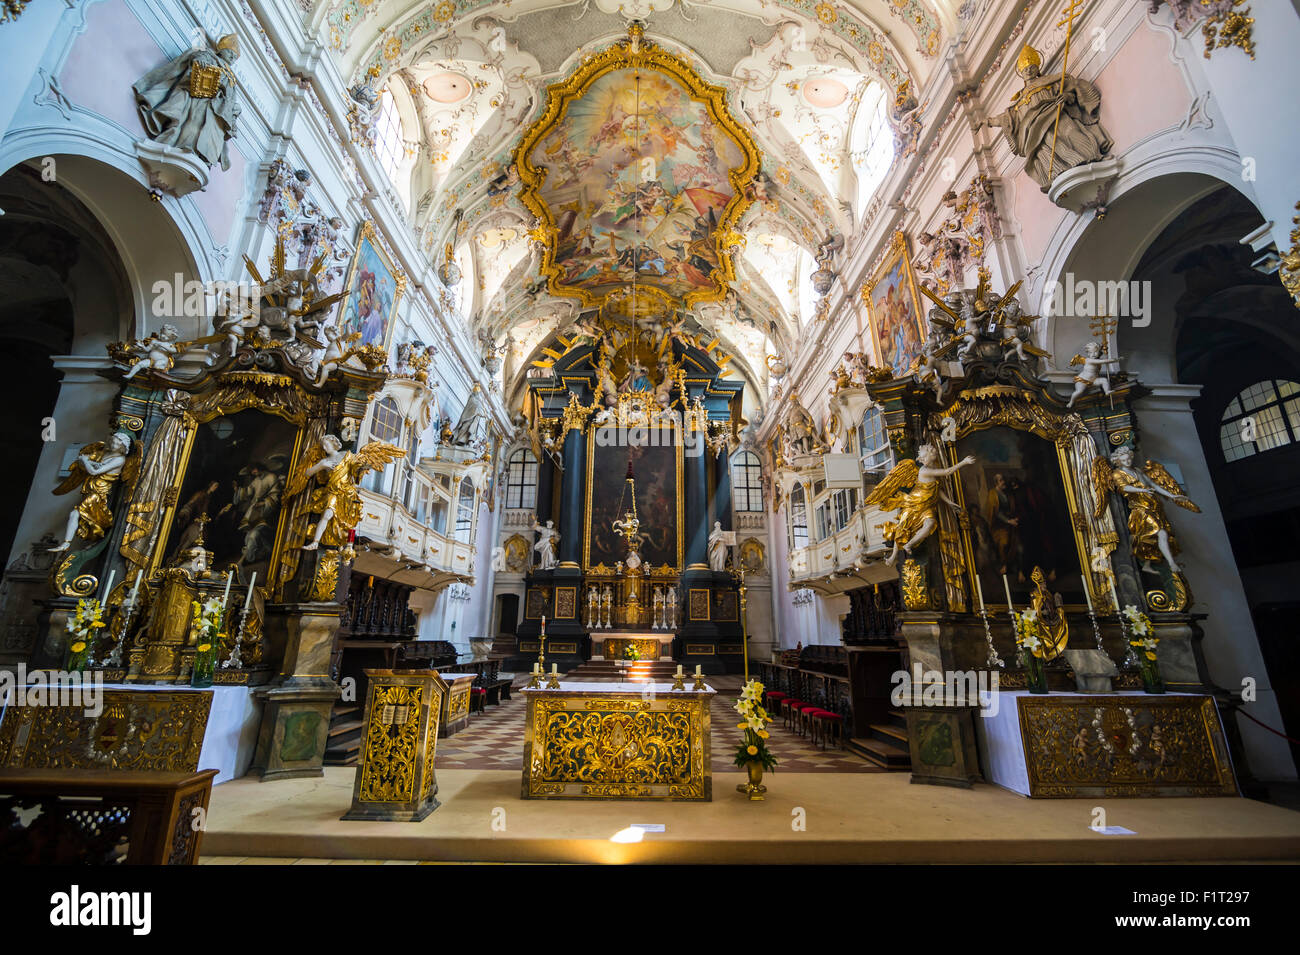 Intérieur de la basilique romane Saint Emmeram (abbaye) connu sous le nom de Schloss Thurn und Taxis, Regensburg, UNESCO, Bavière, Allemagne Banque D'Images